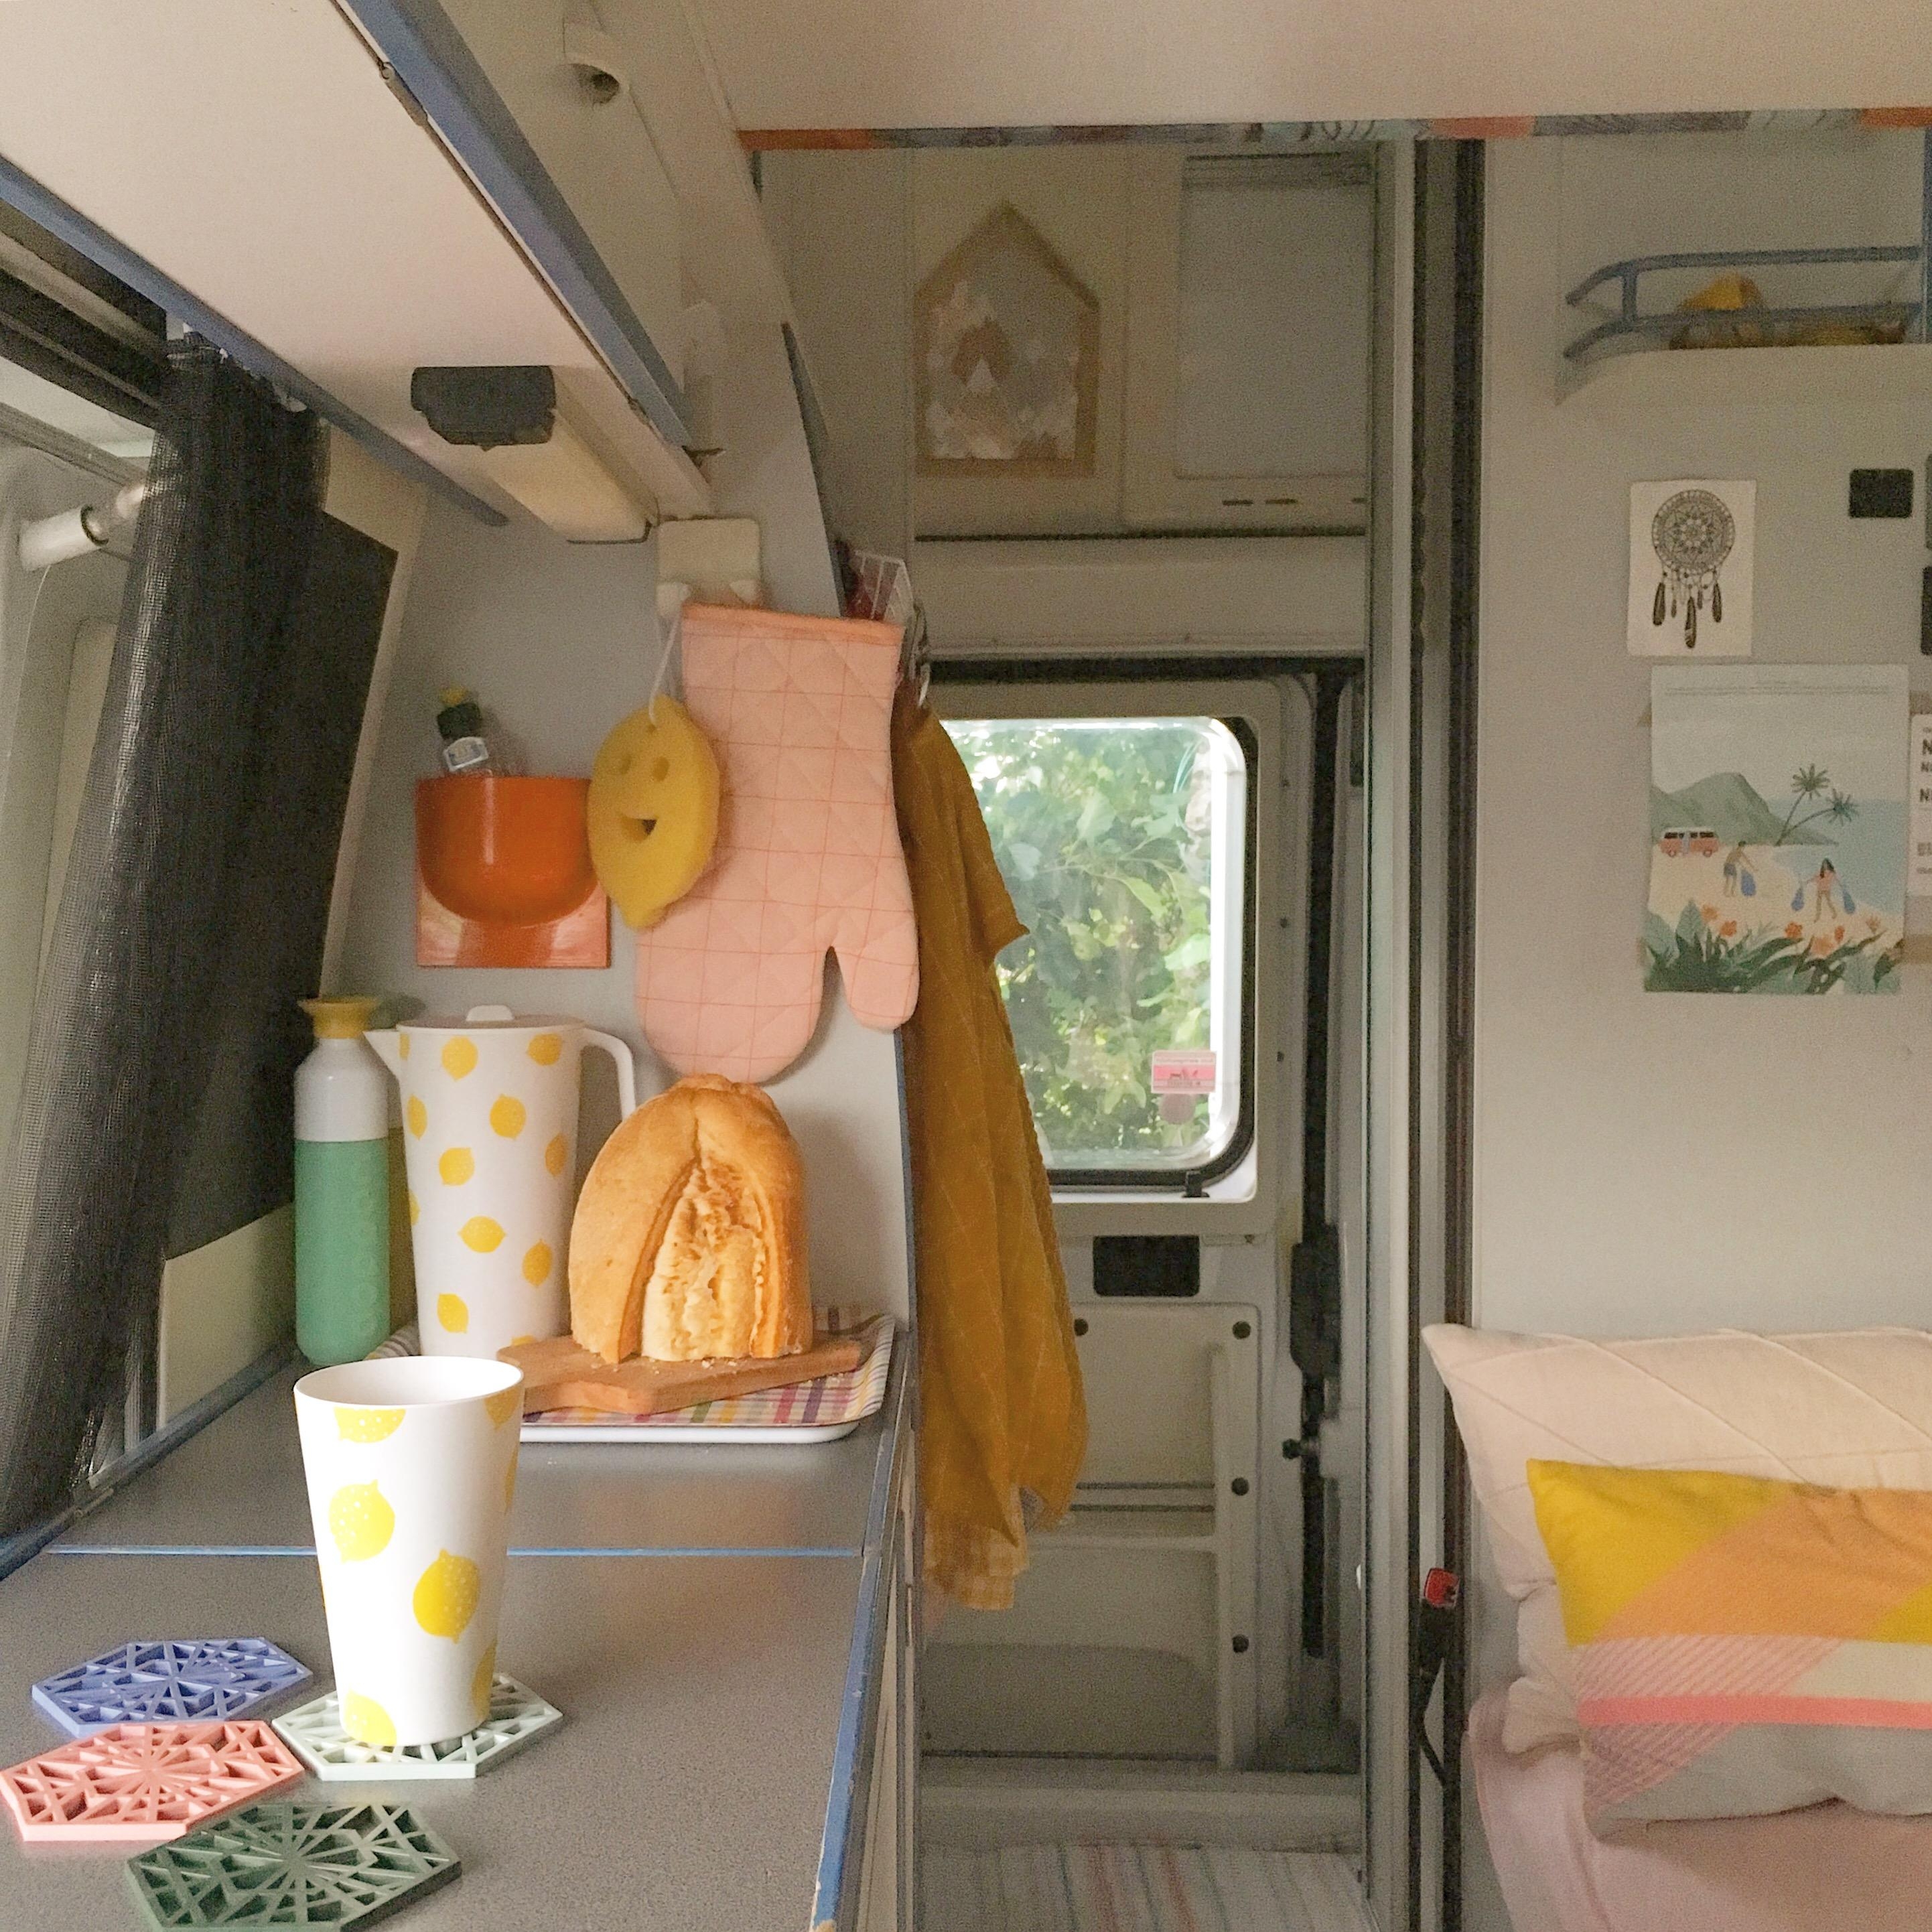 Weniger Platz aber ganz große Entspannung gibt’s im Bus ❤️ #livingchallenge #kleinerraum